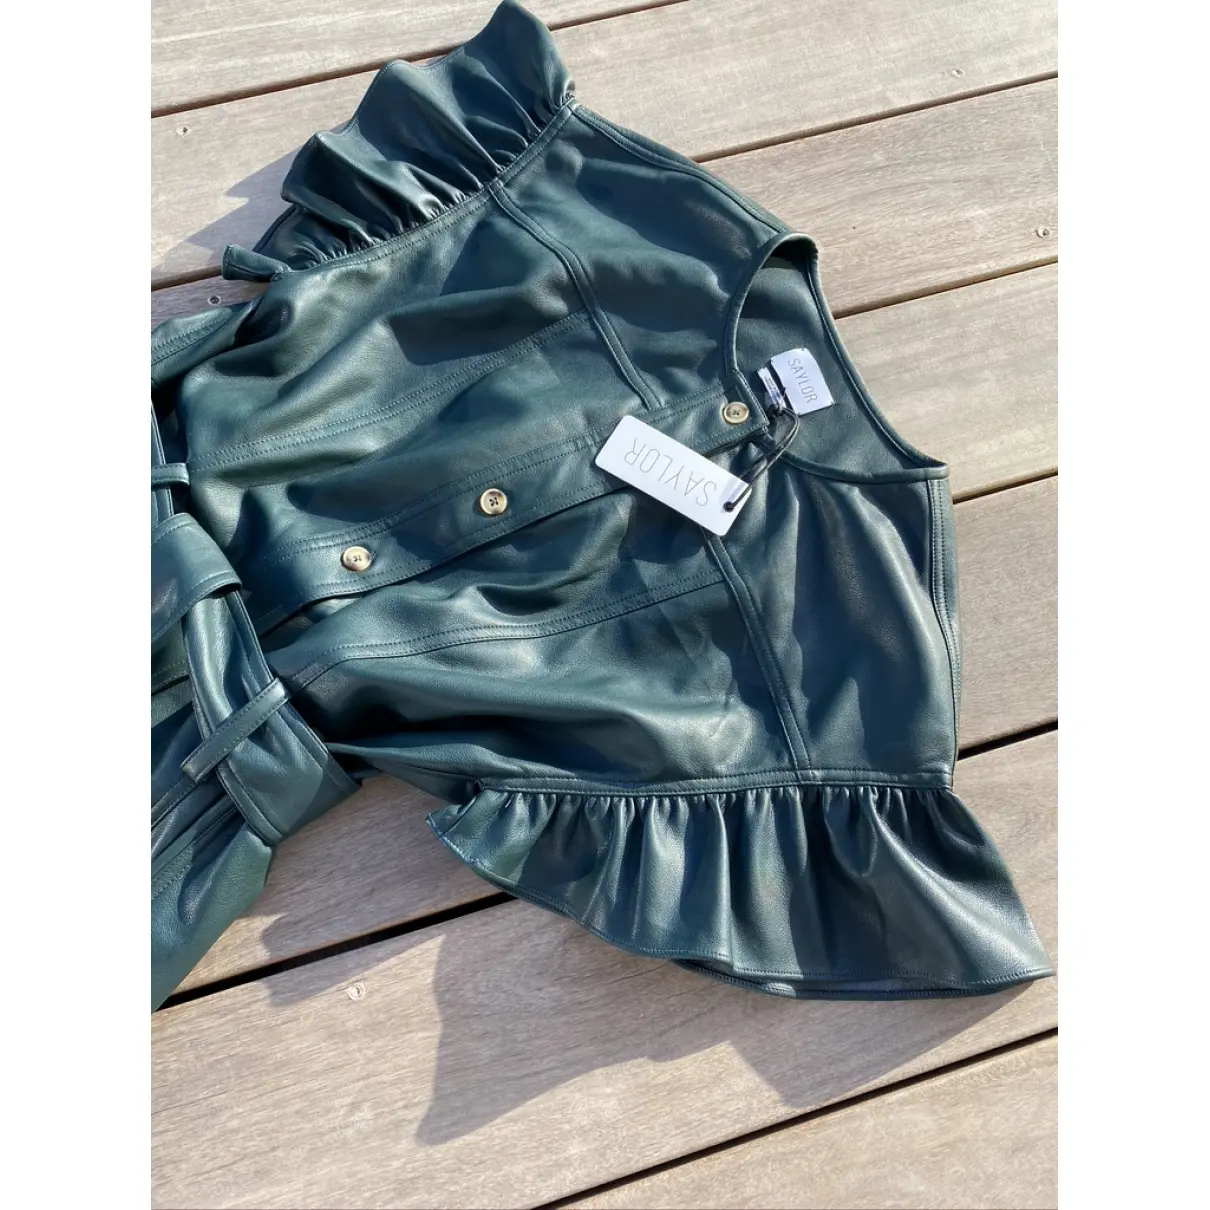 Buy Saylor Leather jumpsuit online